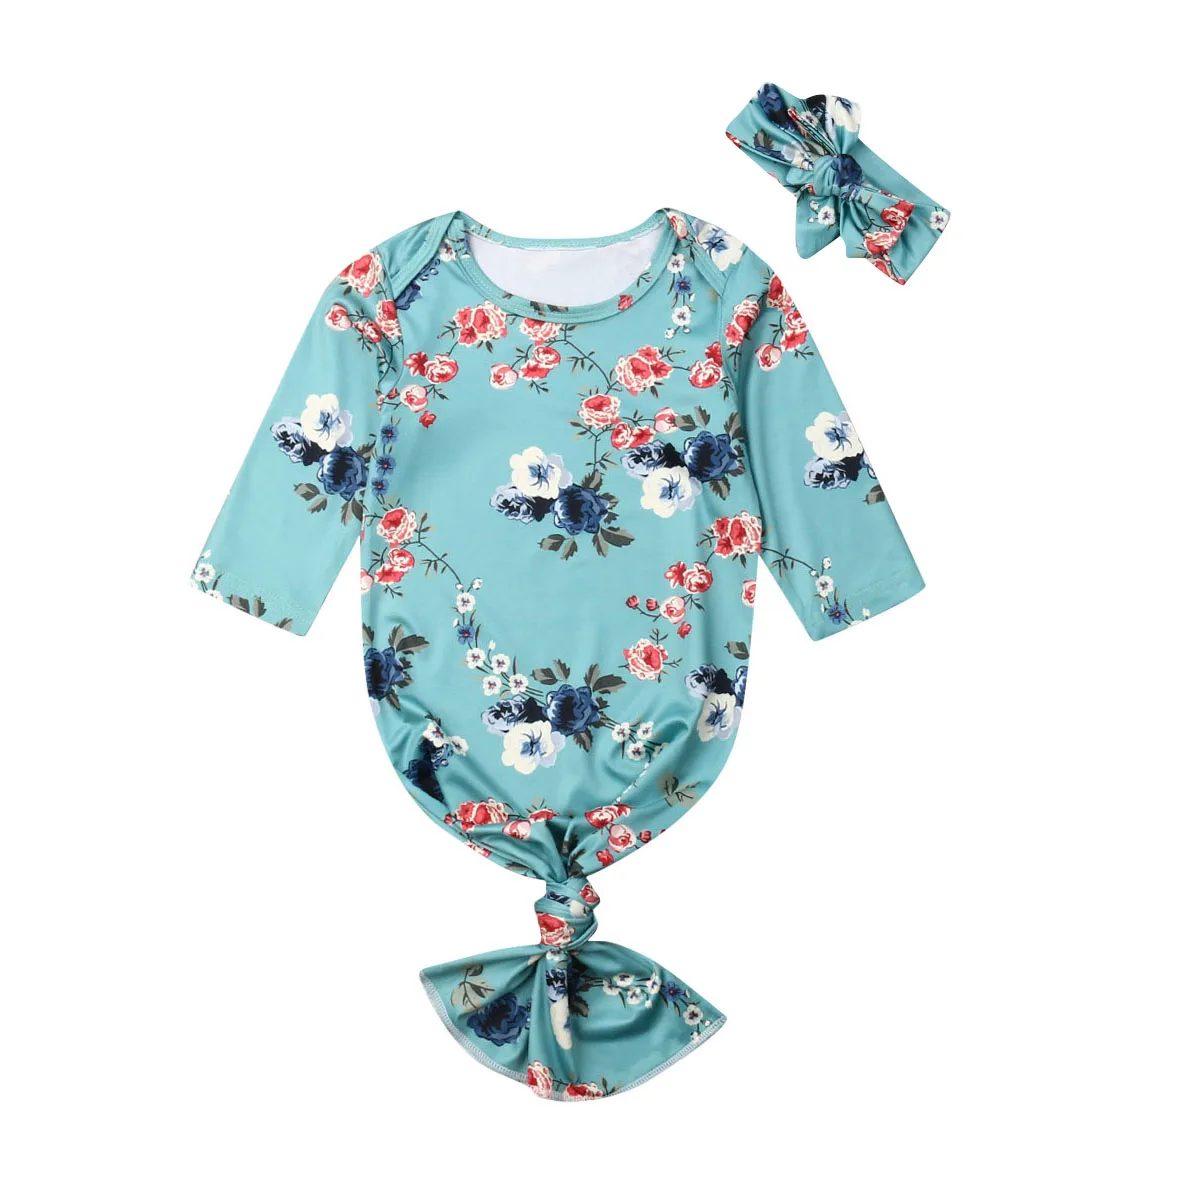 CANIS новорожденных для маленьких девочек цветочные пеленка с принтом Одеяло спальный мешок пеленать ребенка муслин Обёрточная бумага+ оголовье, набор